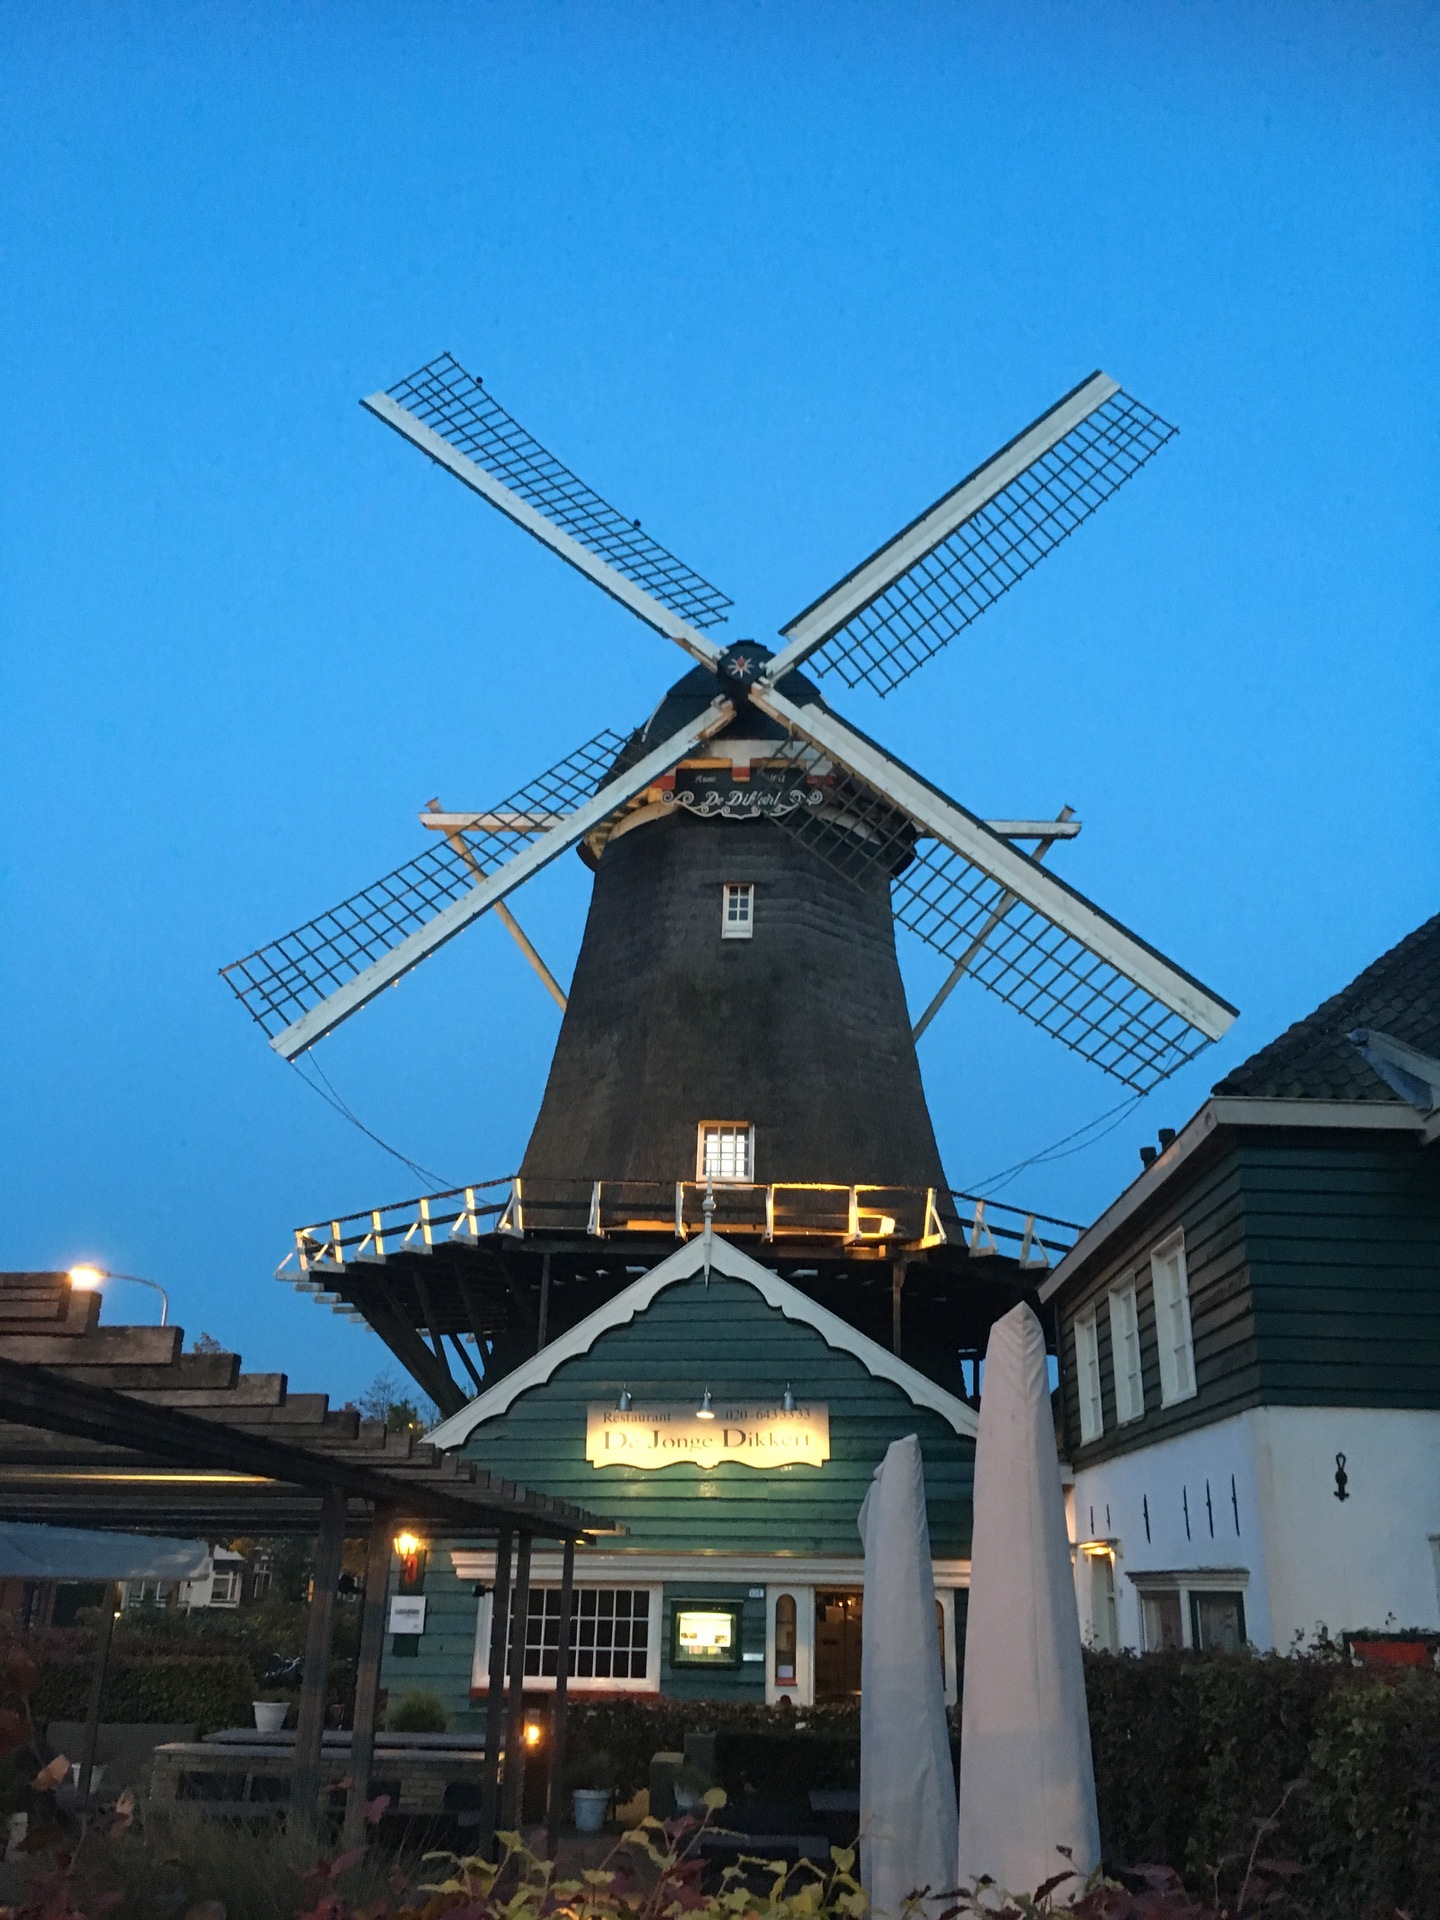 アムステルフェーン おいしいフレンチが食べれる風車のレストランde Jonge Dikkert オランダに住むとこうなる